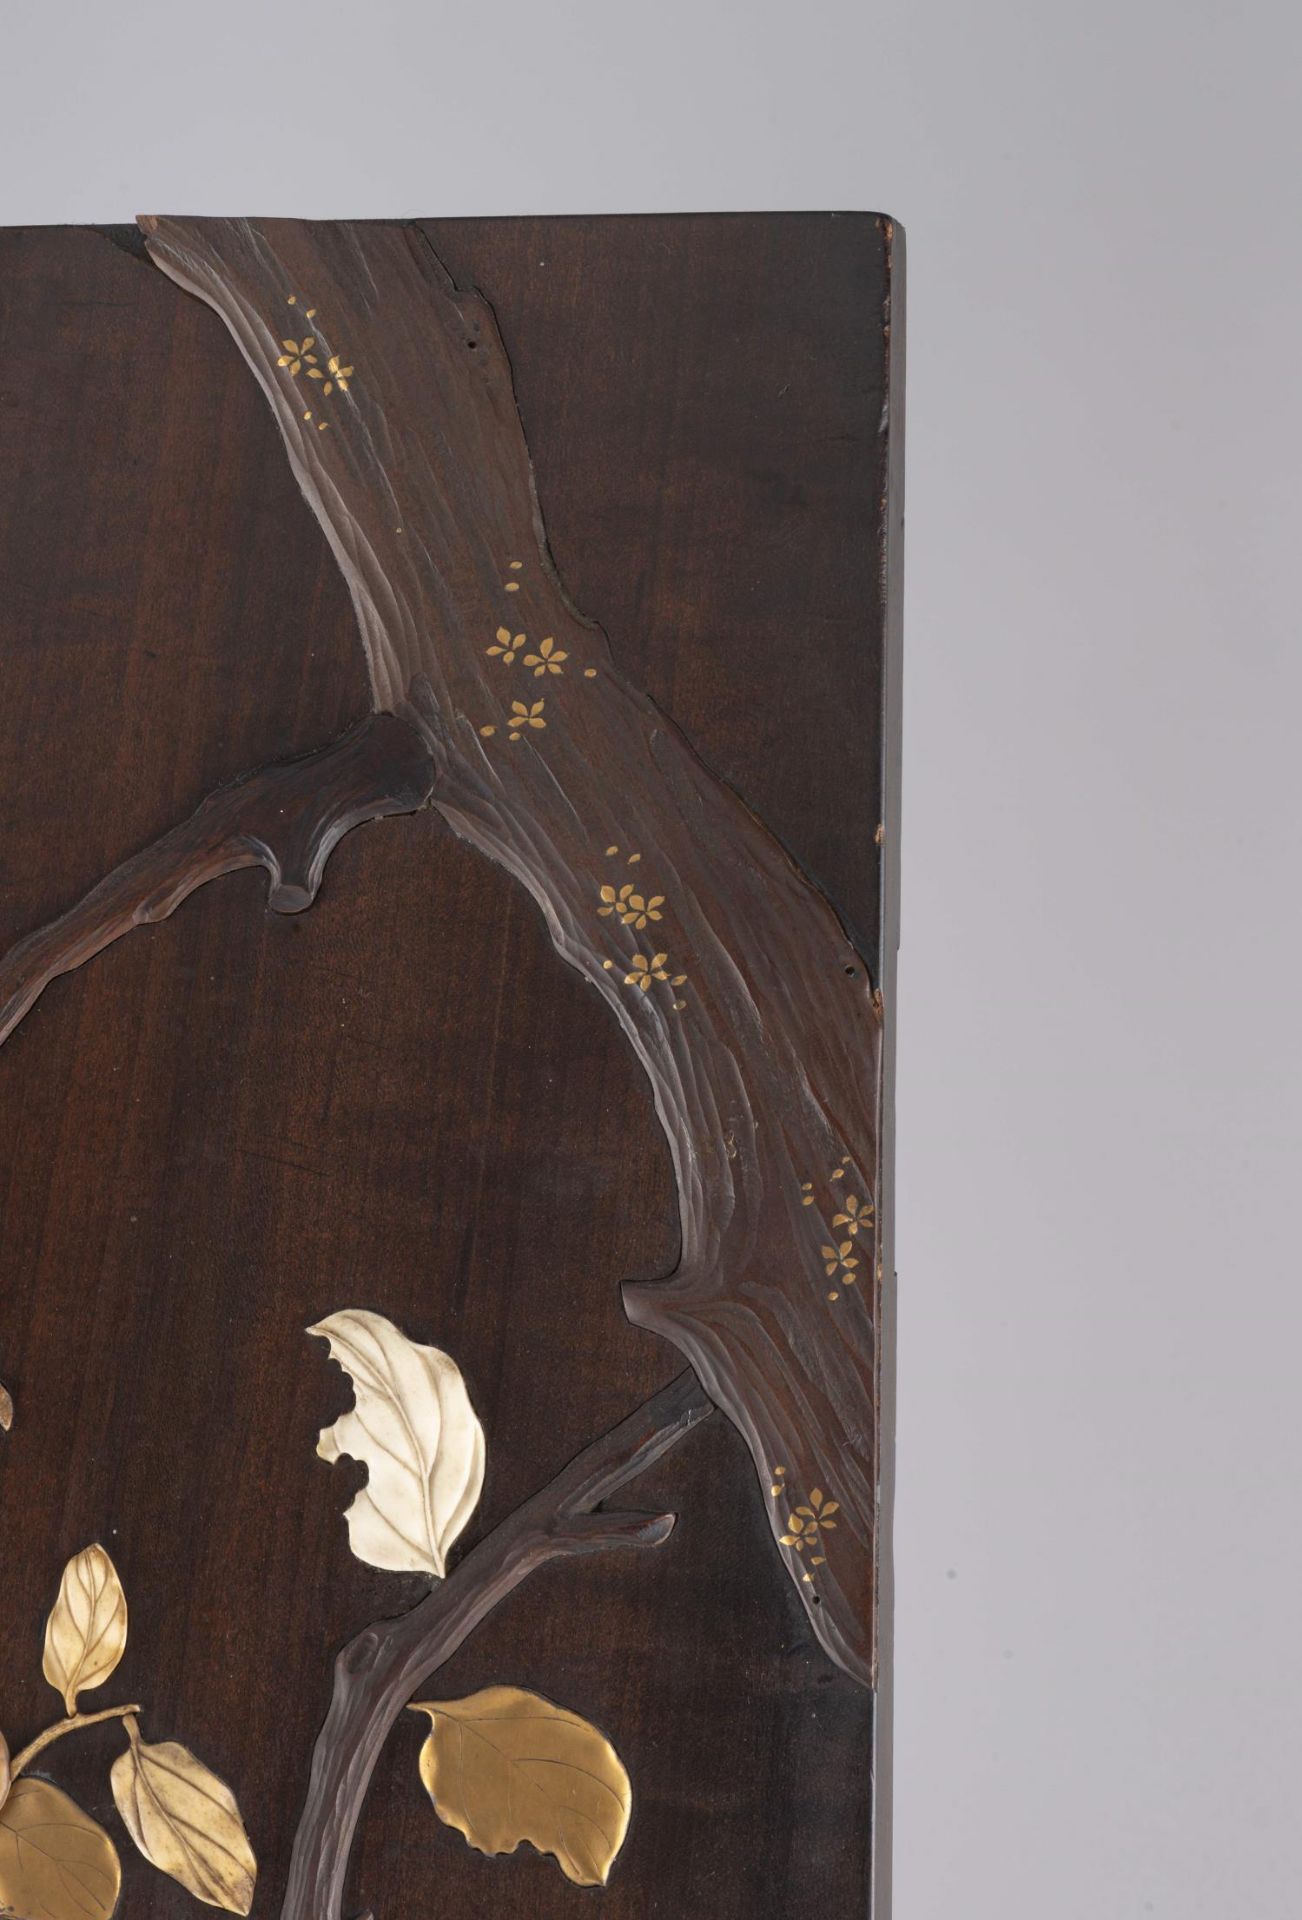 JAPON, Panneau en bois avec incrustations d'ivoire, nacre, laque d'or et os... - Image 6 of 6